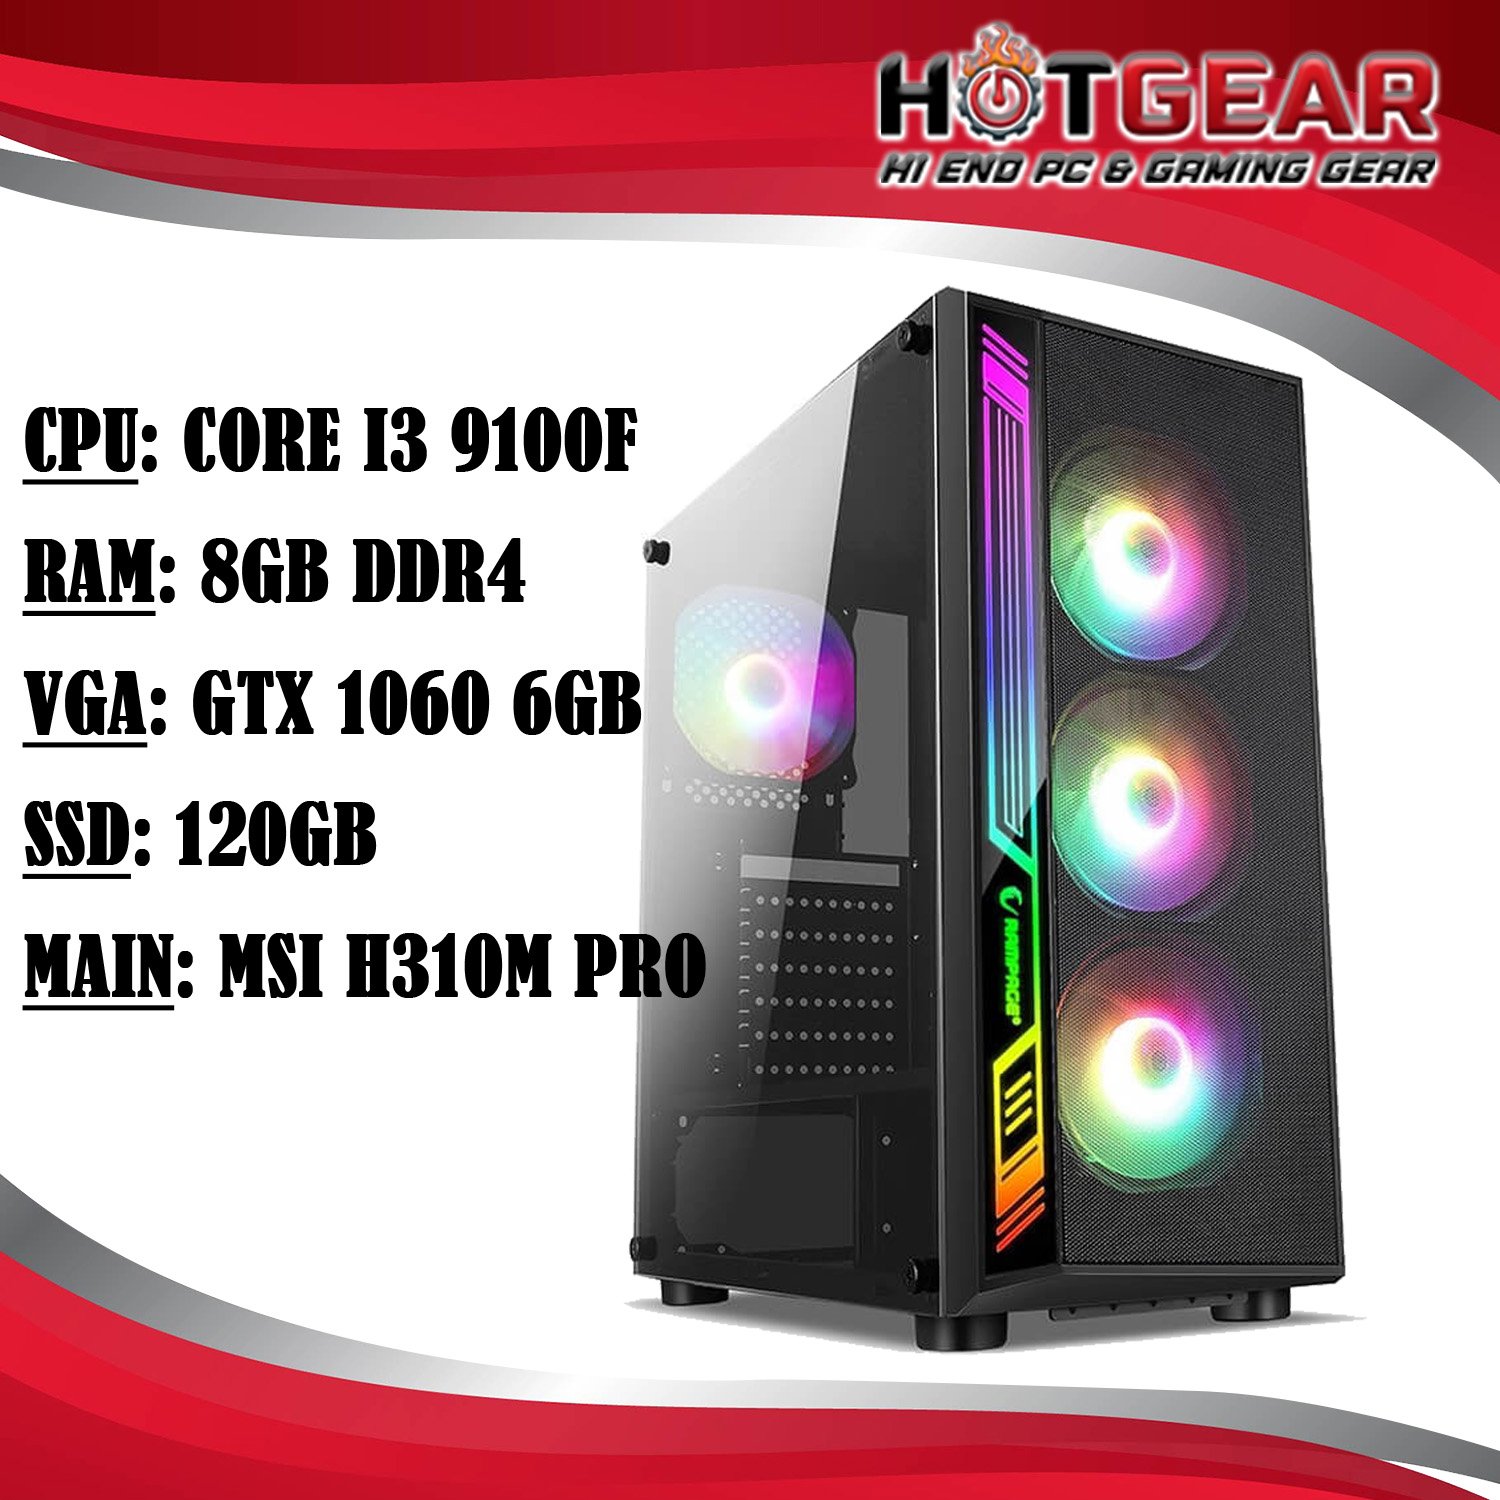 HOTGEAR PC CORE i3 9100F / DDR4 8G / GTX 1060 6GB / SSD 120GB